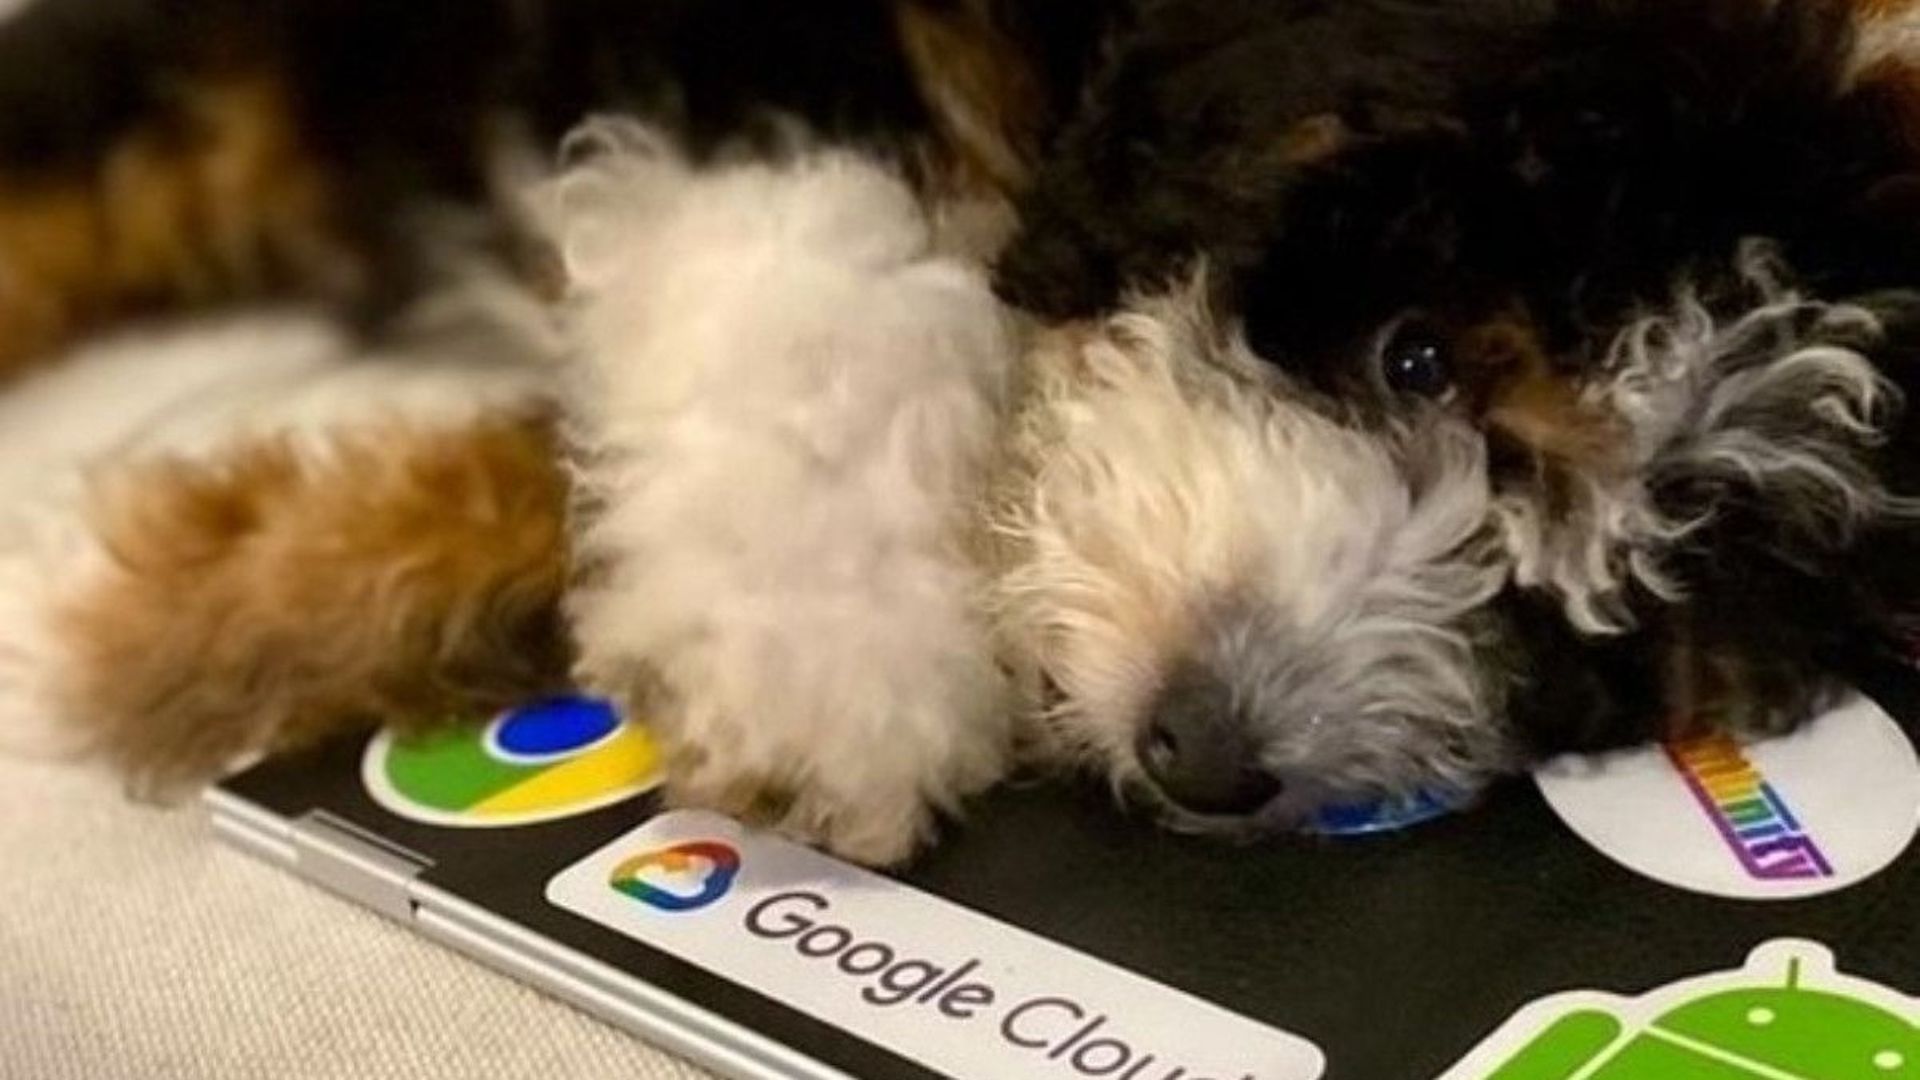 Avez-vous déjà entendu parler des "dooglers", les chiens des employés de Google ?